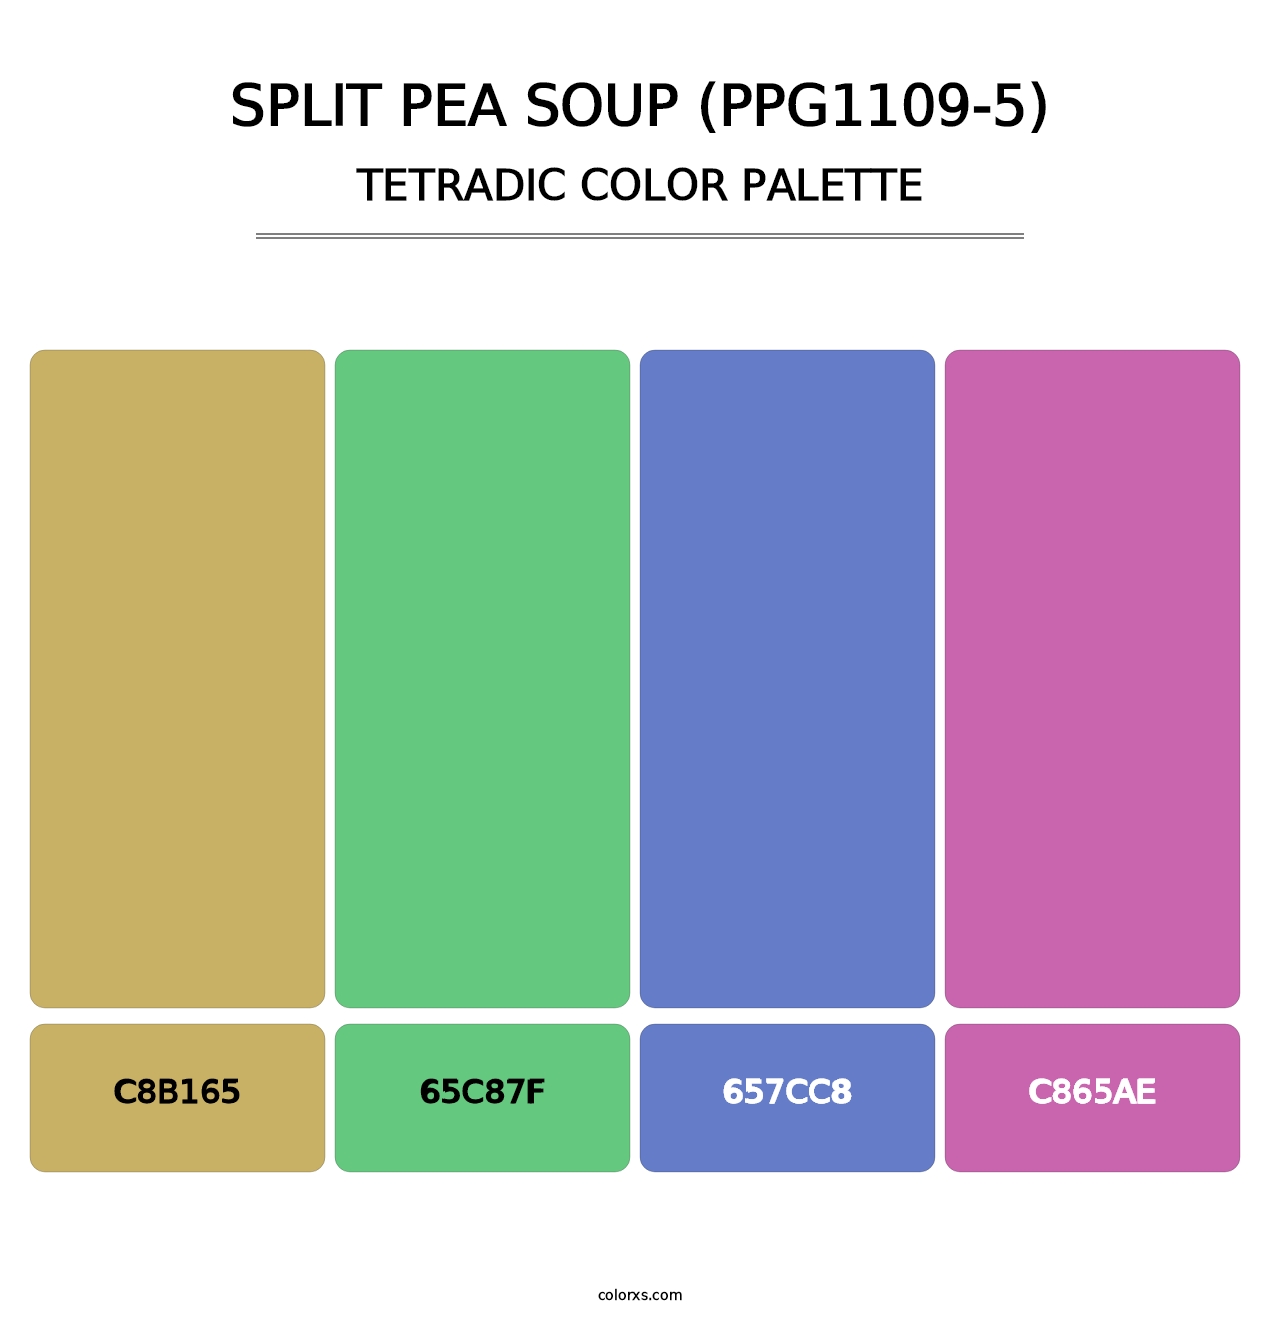 Split Pea Soup (PPG1109-5) - Tetradic Color Palette